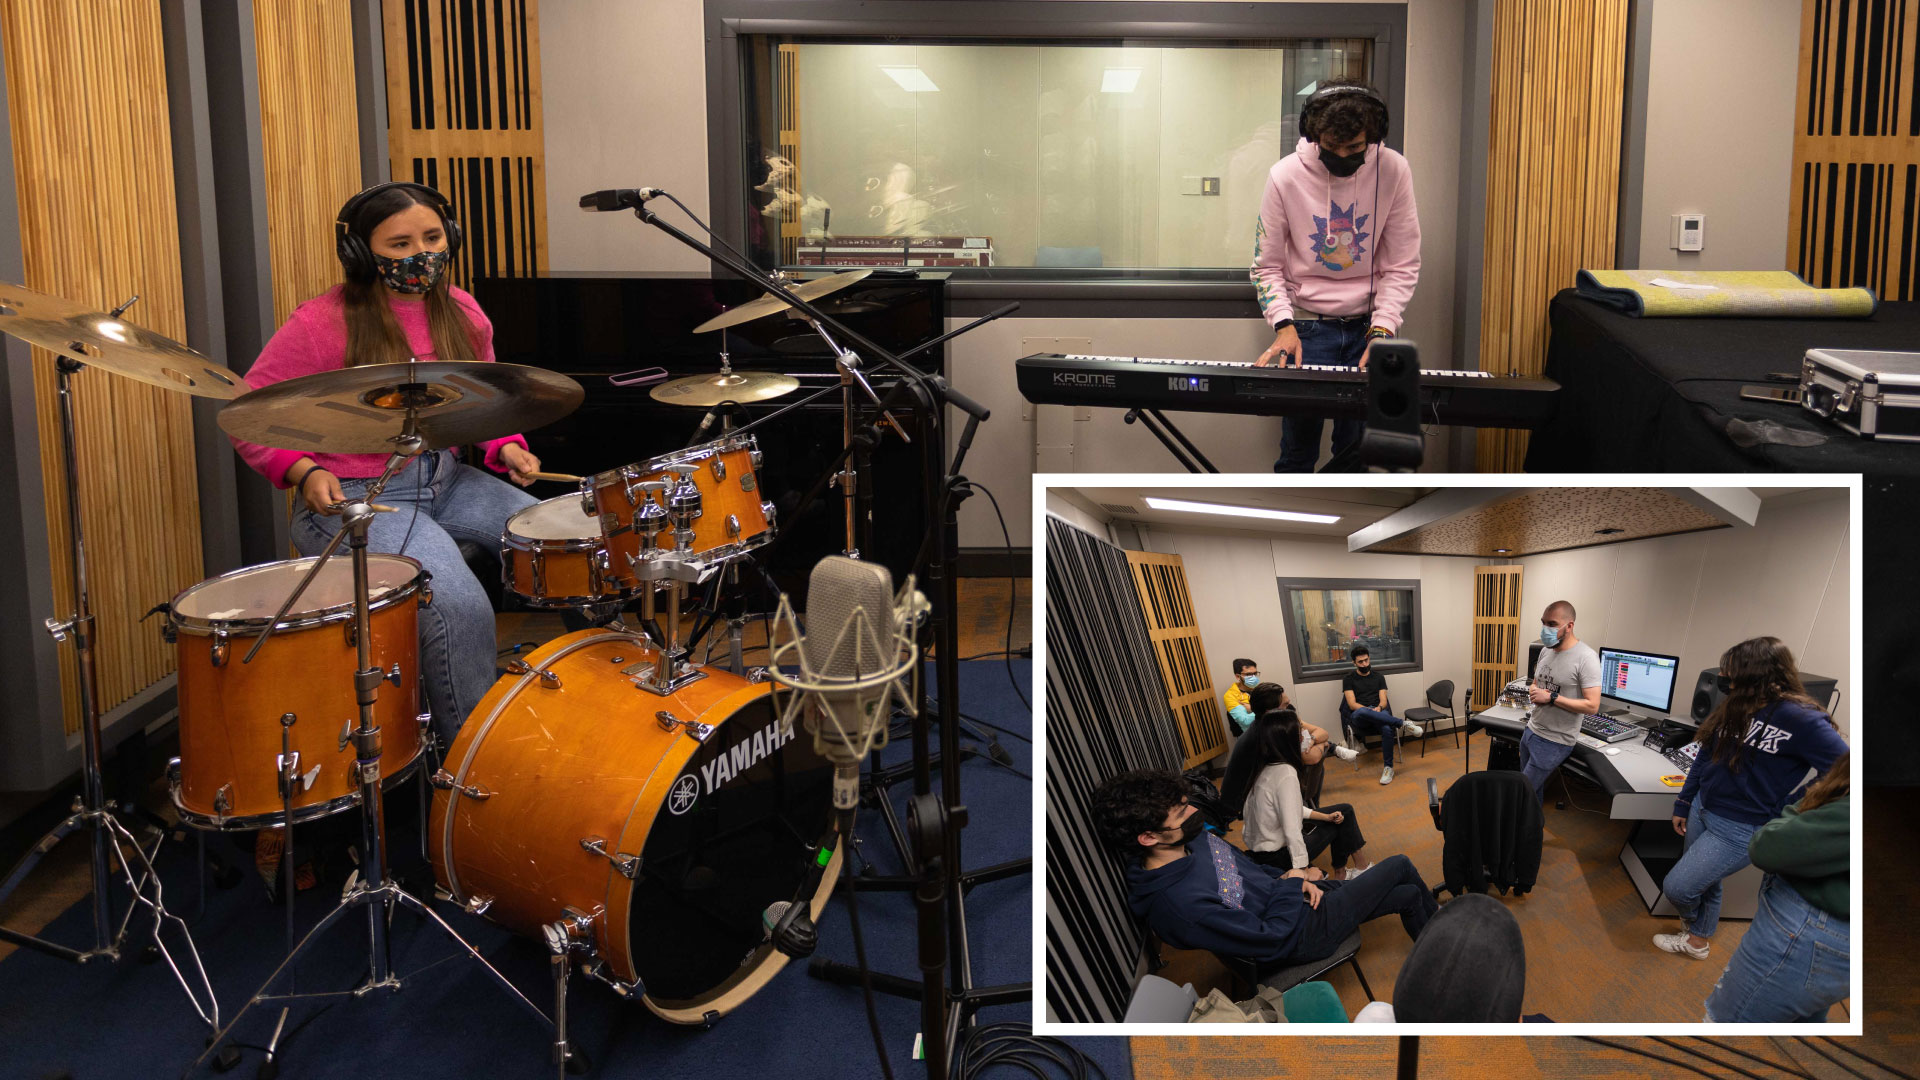 Este curso propone comprender y desarrollar habilidades en la grabación de diferentes tipos de ensambles musicales dentro de un estudio de grabación.